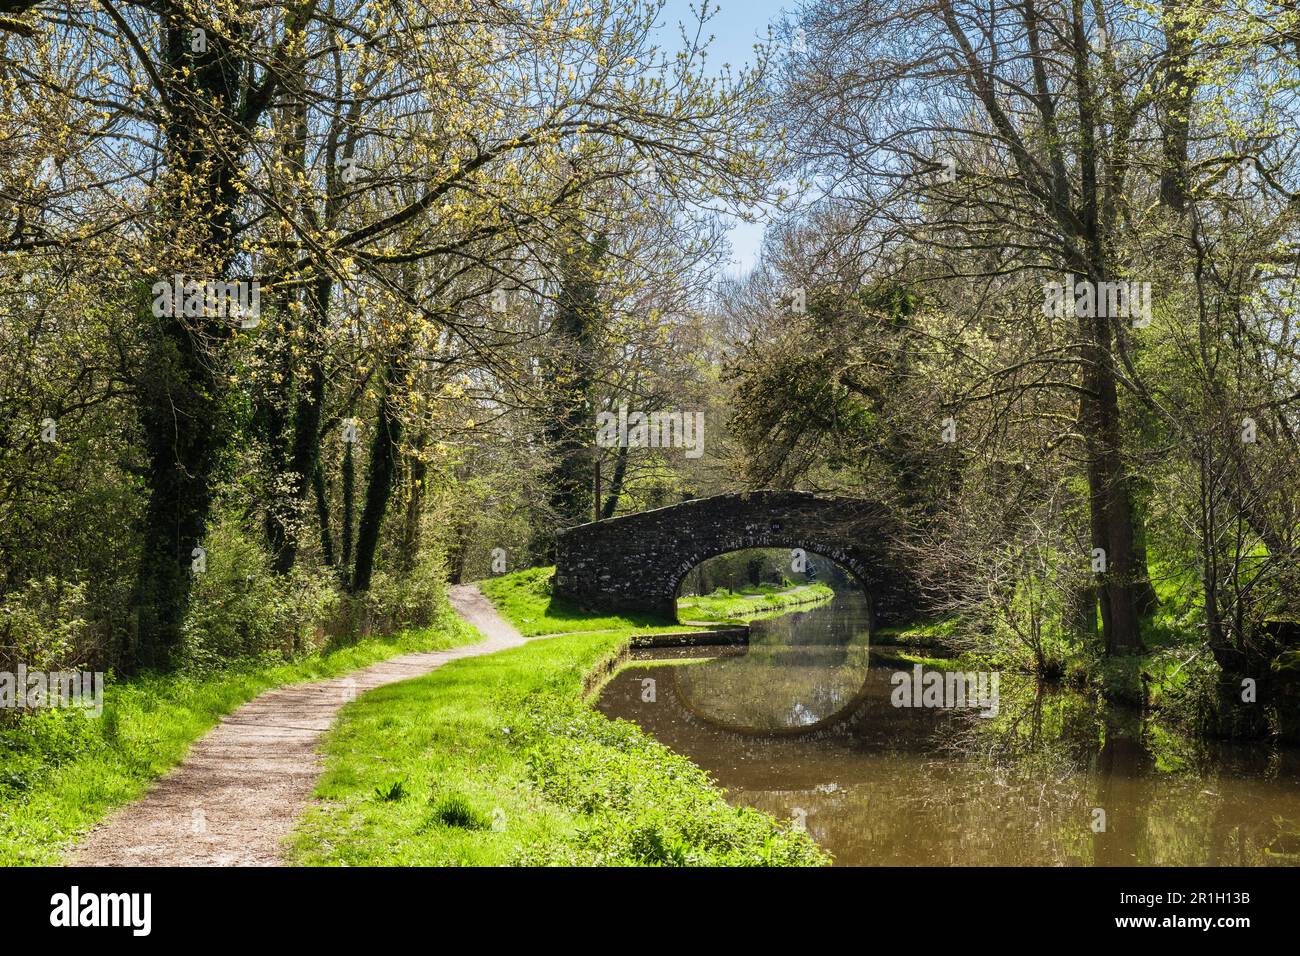 Sentier de randonnée le long du Monbucshire rural et du canal de Brecon dans le parc national de Brecon Beacons. Pencelli, Brecon, Powys, pays de Galles, Royaume-Uni, Grande-Bretagne Banque D'Images